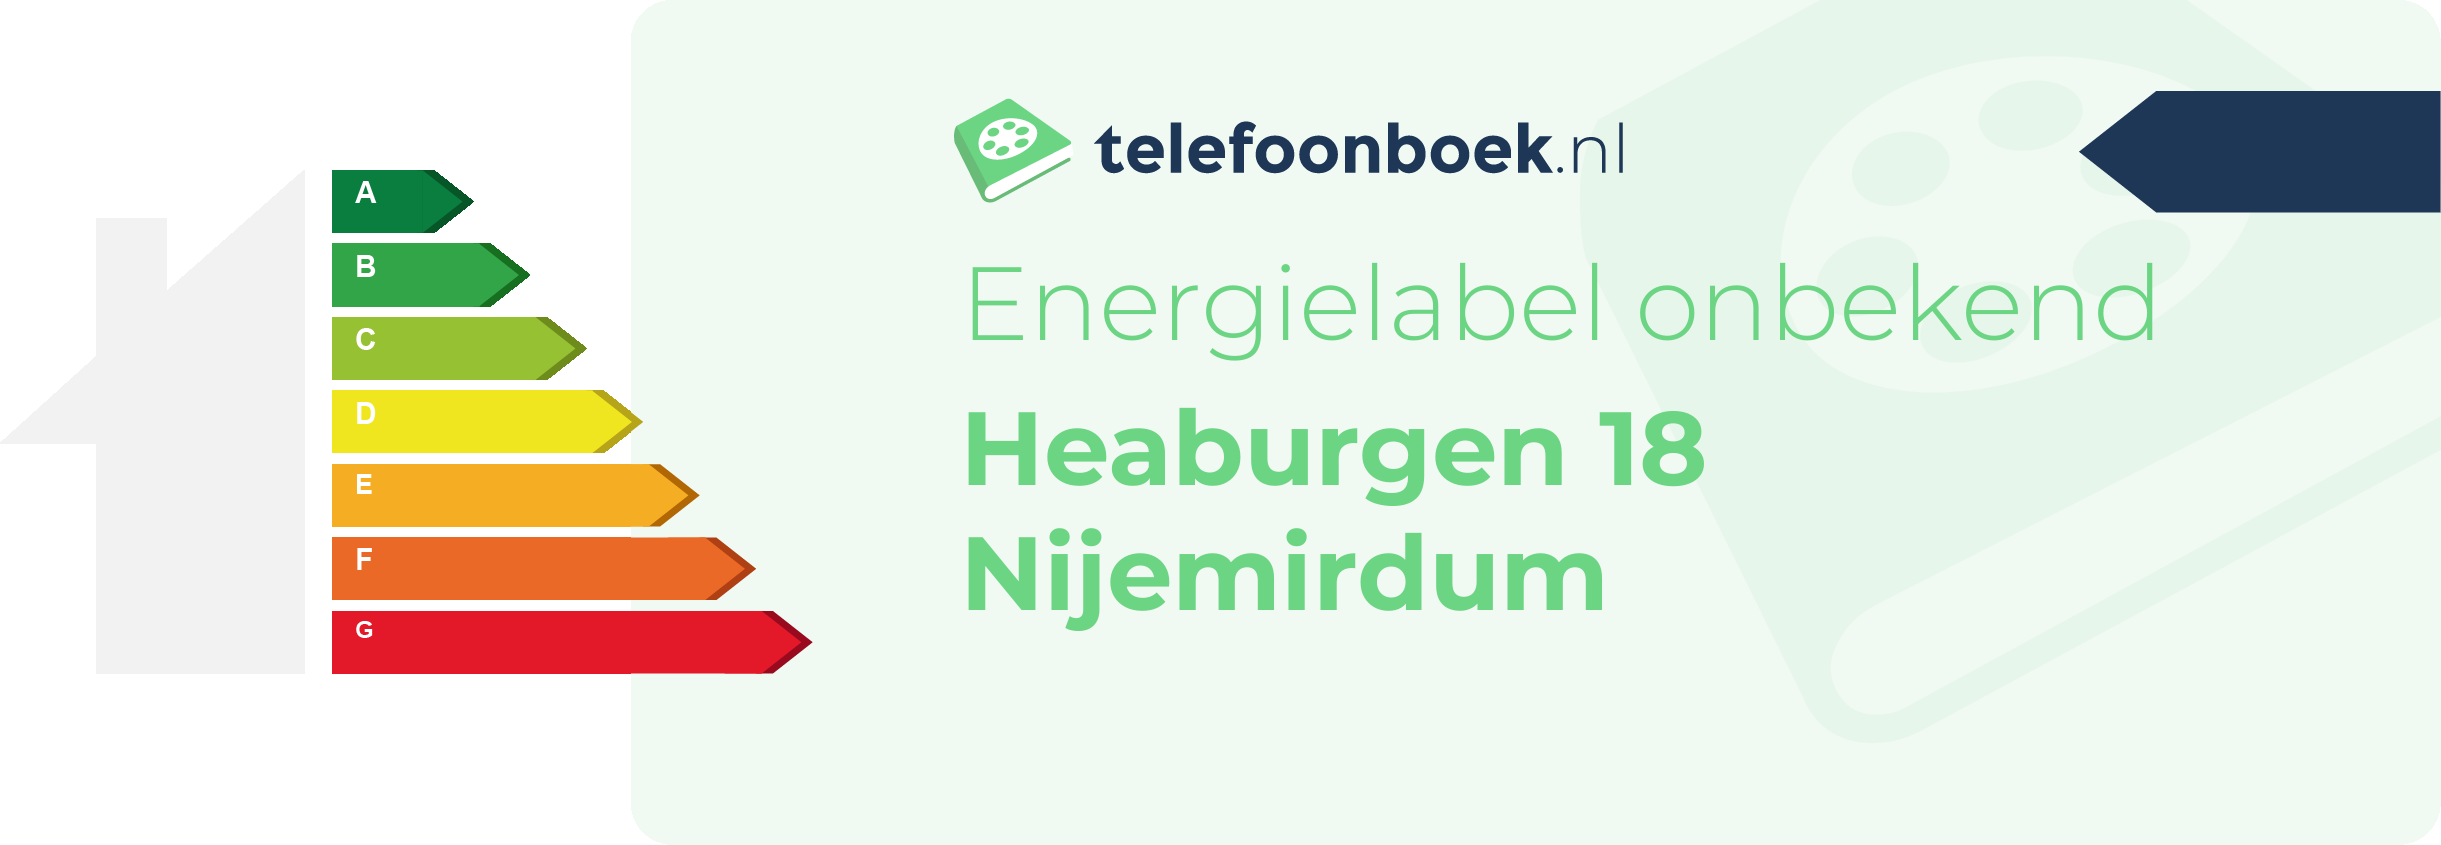 Energielabel Heaburgen 18 Nijemirdum